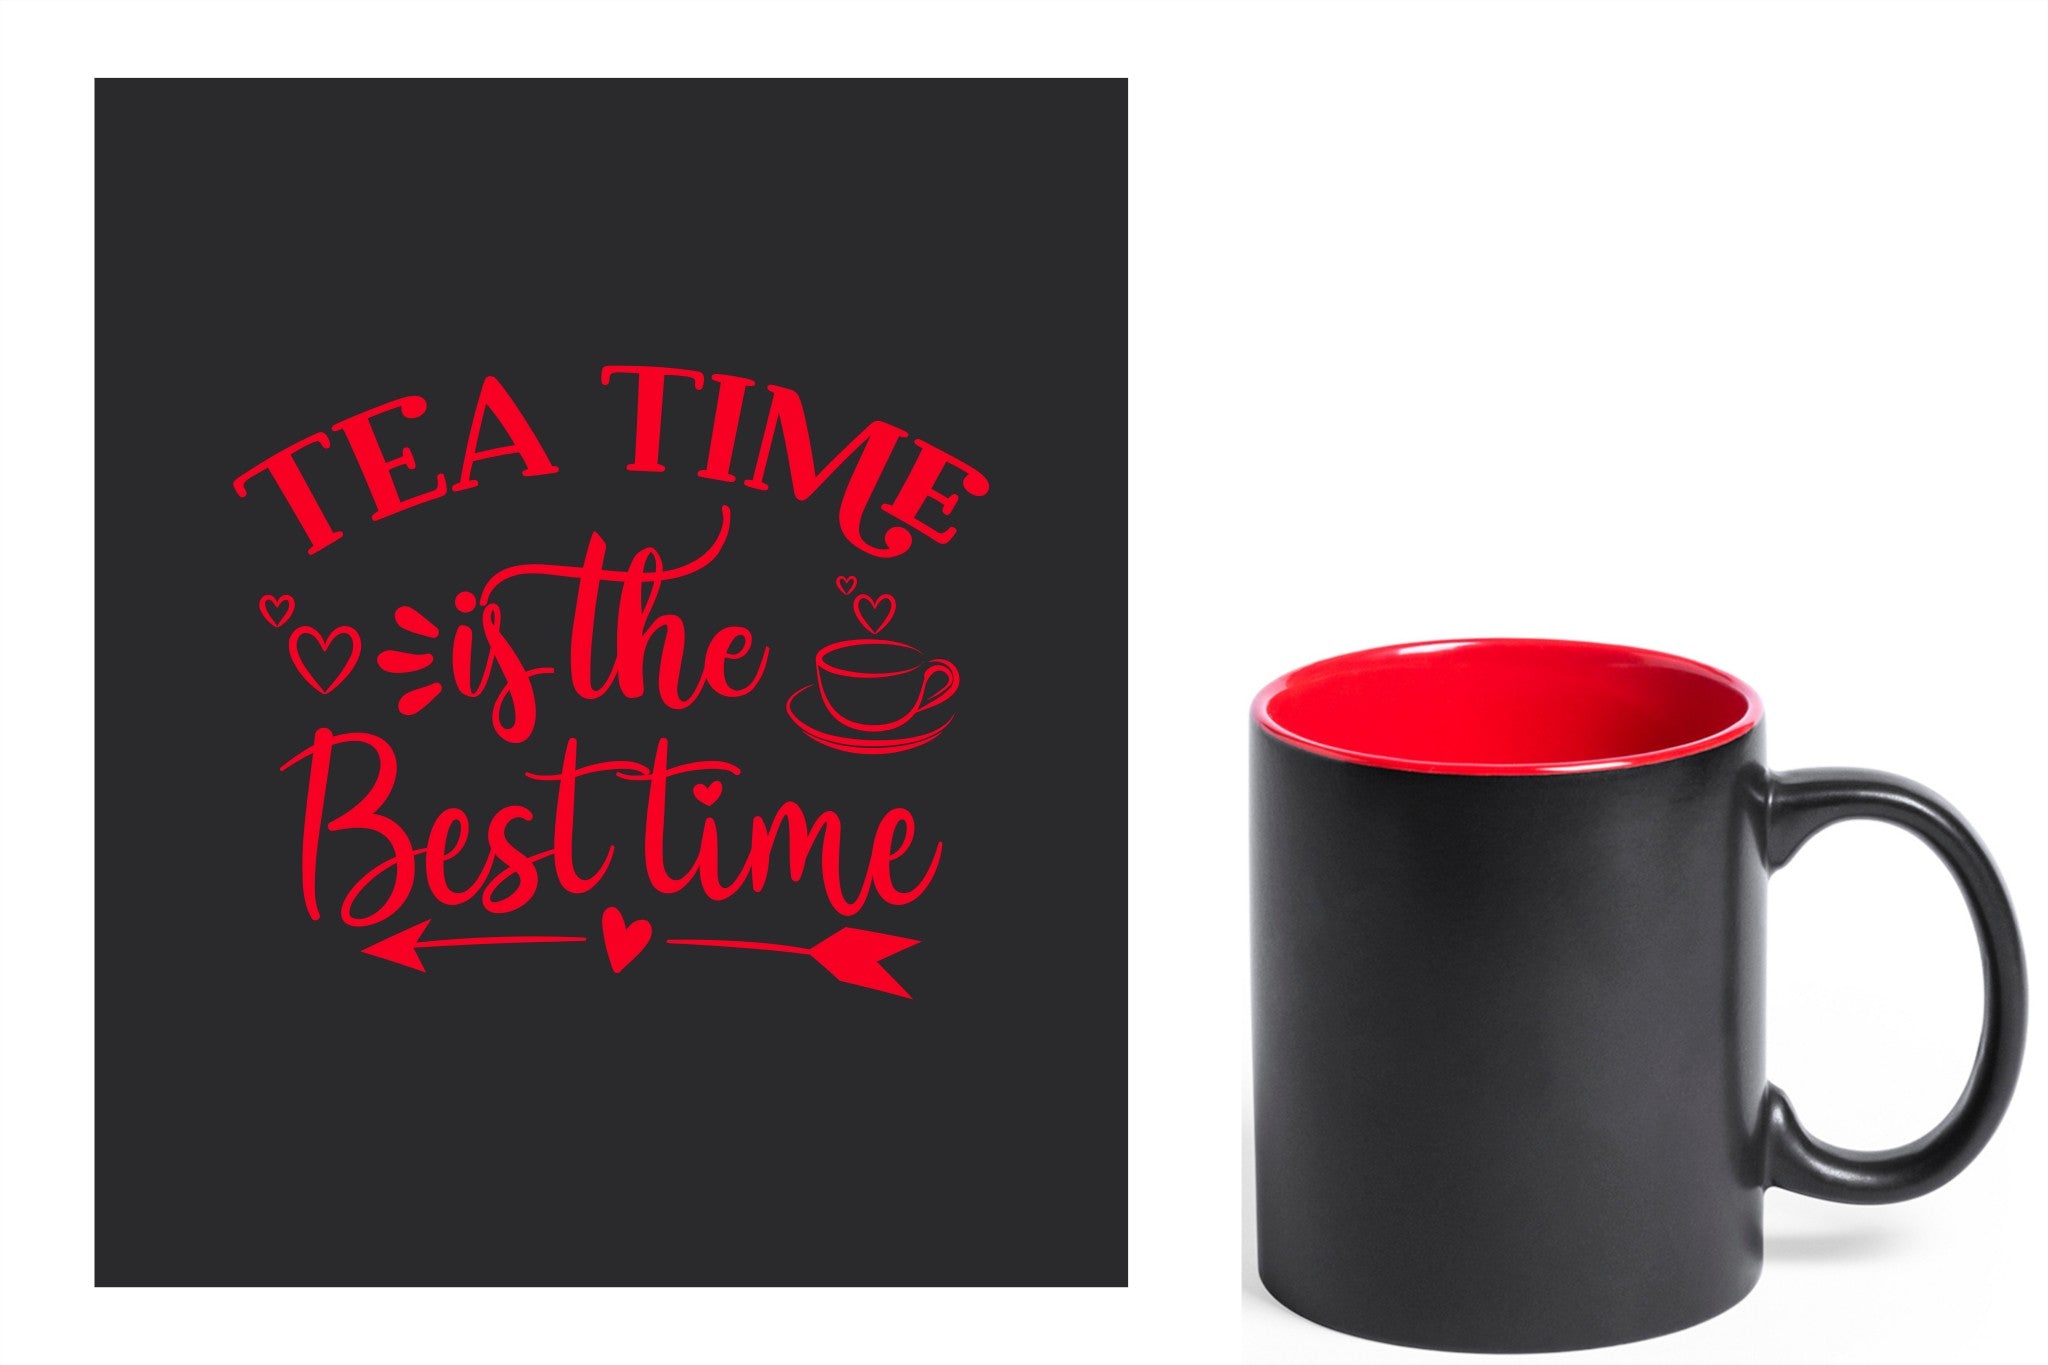 zwarte keramische mok met rode gravure  'Tea time is the best time'.